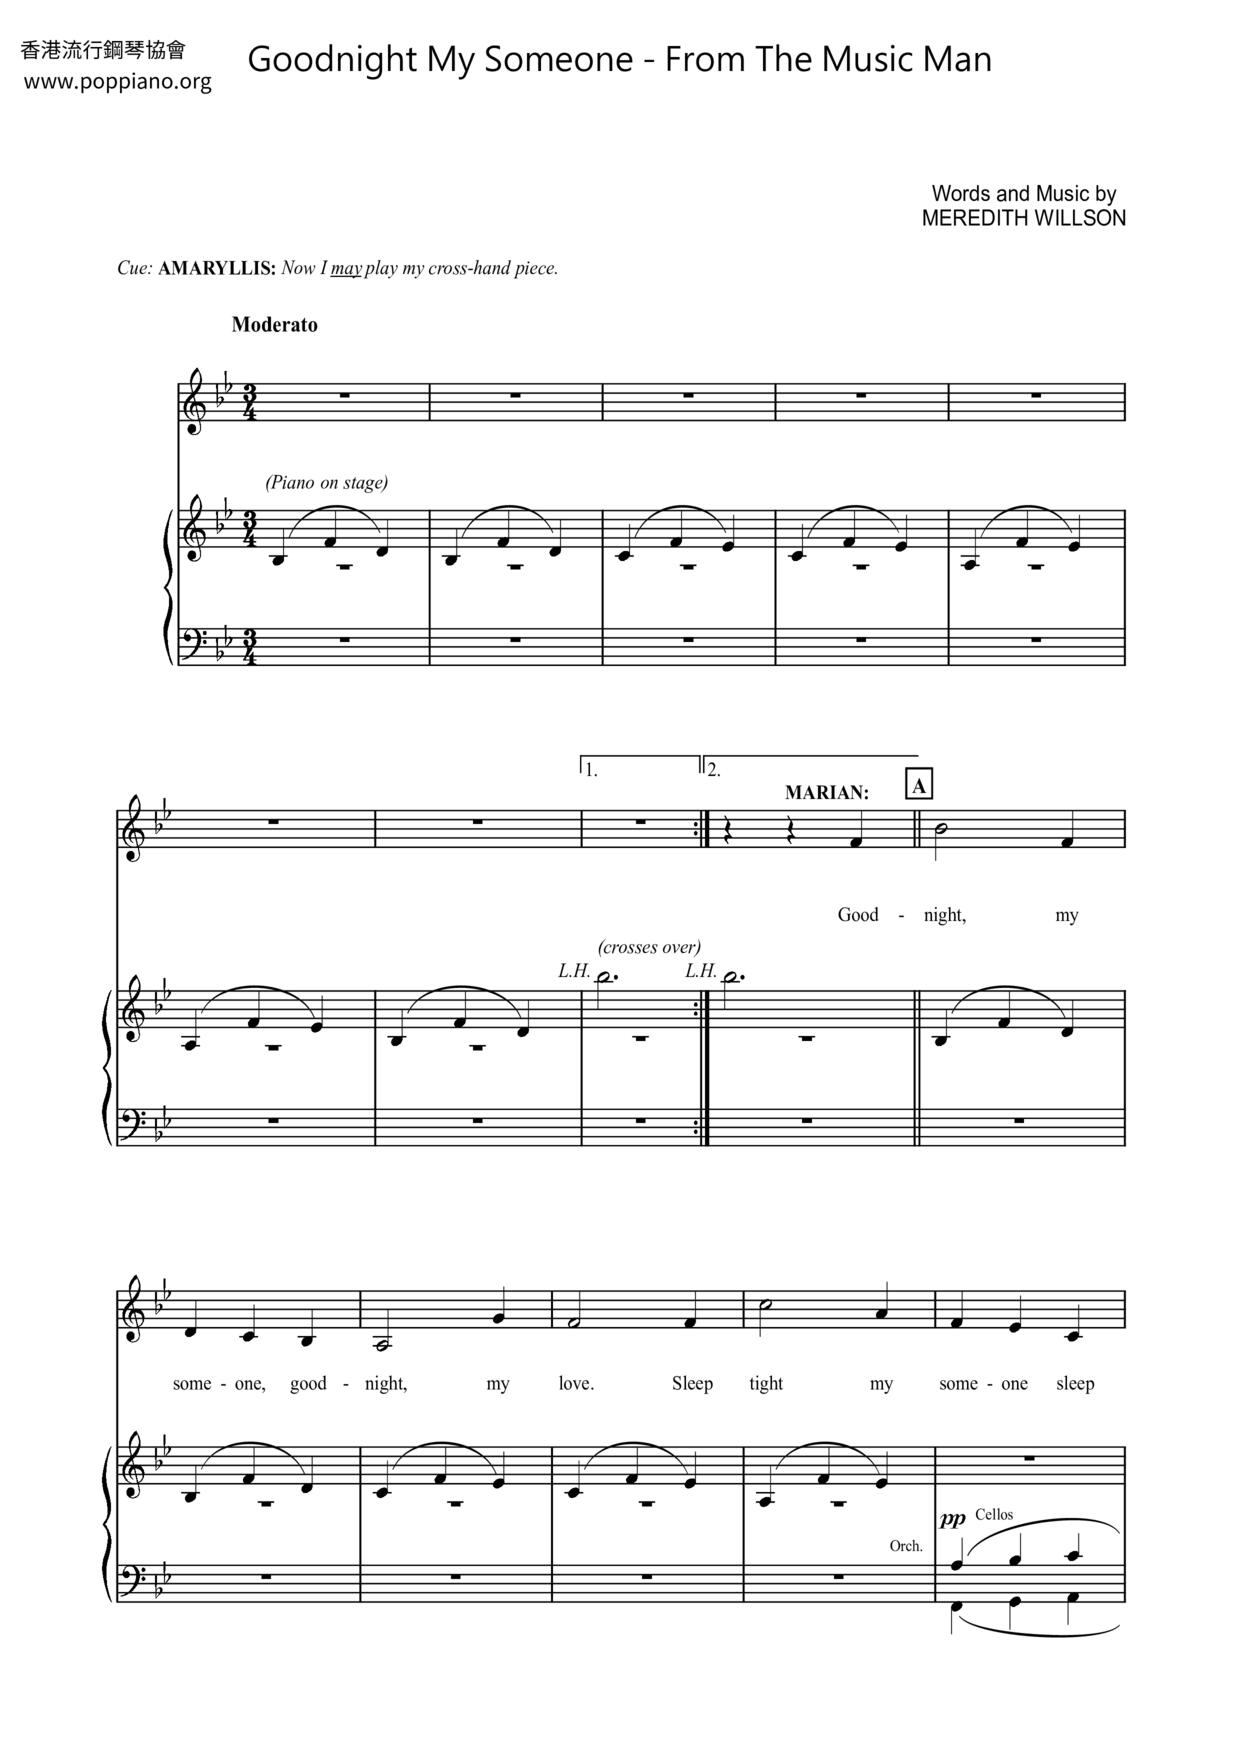 Shirley Jones-Goodnight My Someone - From The Music Man Sheet Music pdf ...